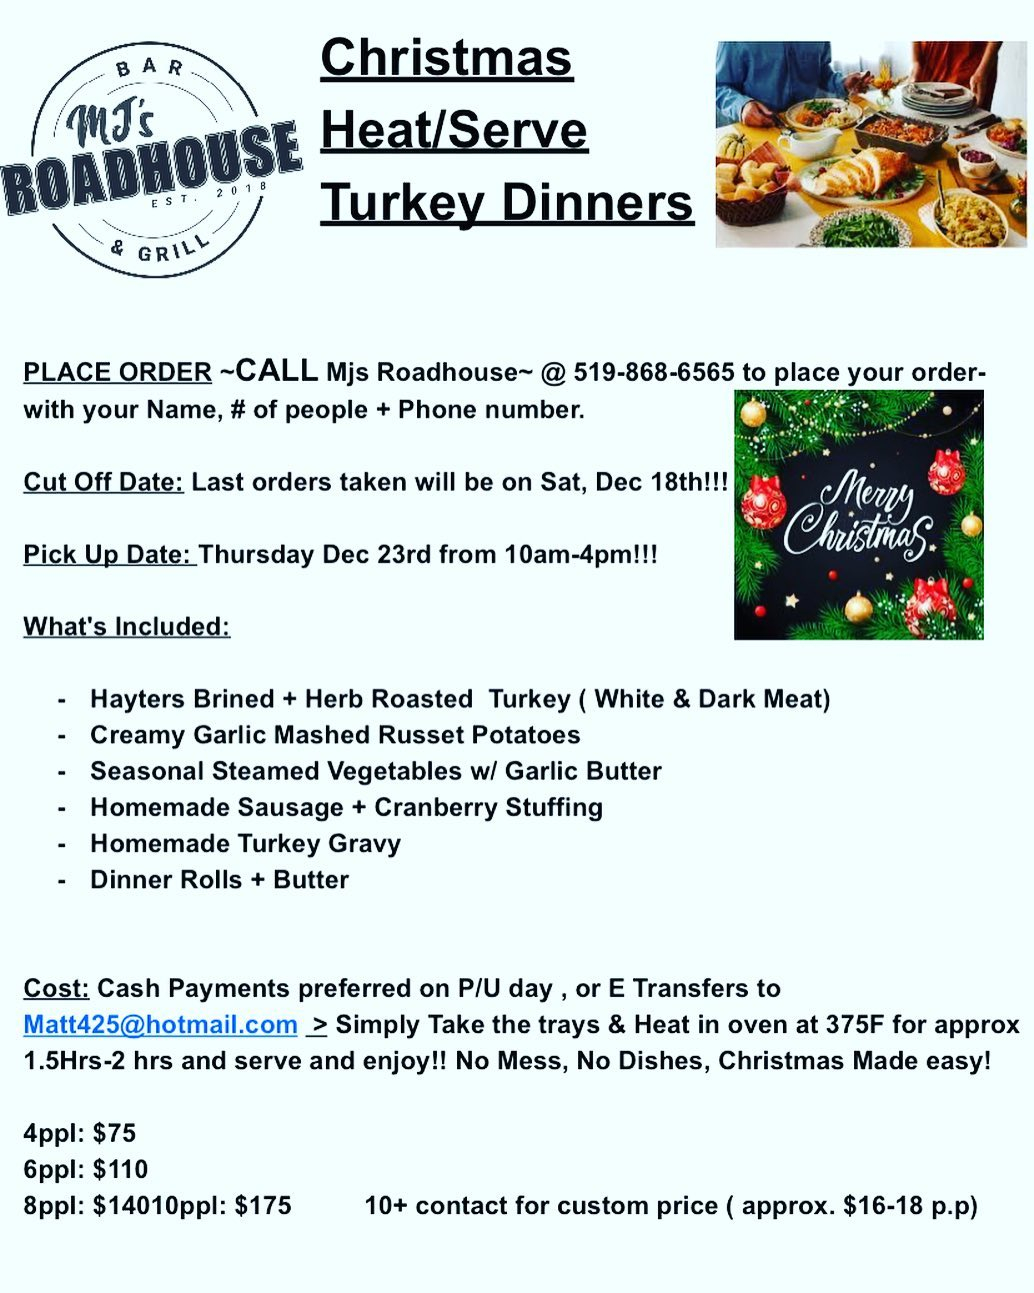 mjs roadhouse Christmas dinner information poster 